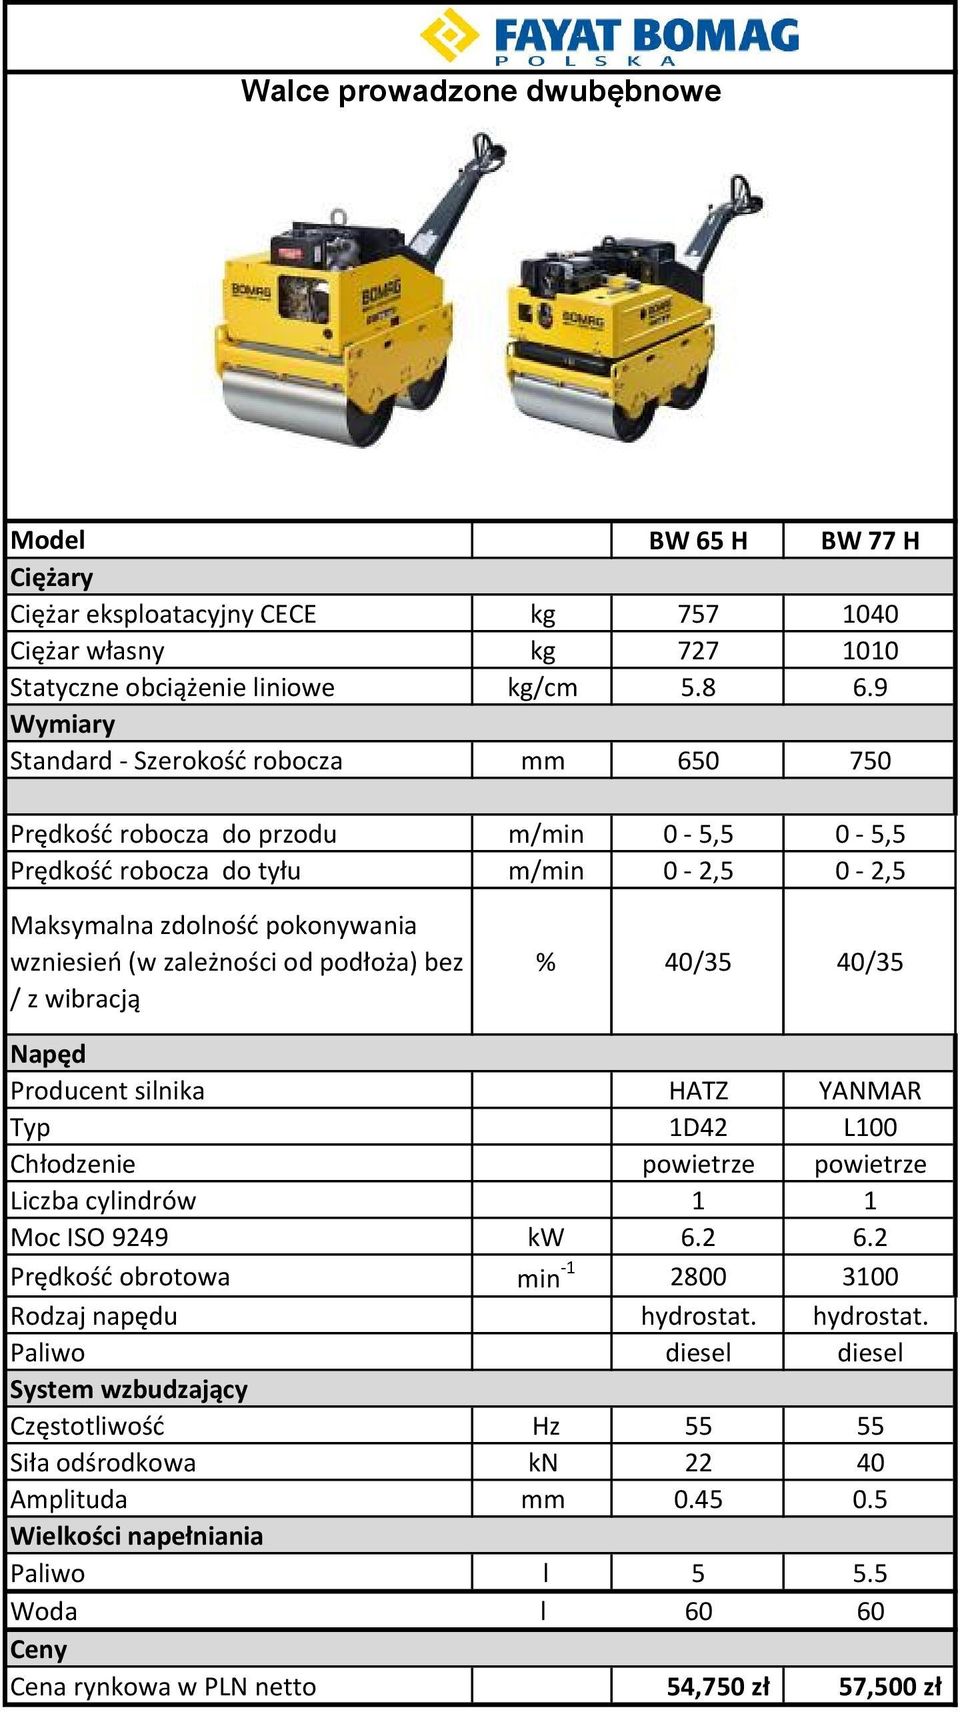 Producent silnika HATZ YANMAR Typ 1D42 L100 Chłodzenie powietrze powietrze Liczba cylindrów 1 1 Moc ISO 9249 kw 6.2 6.